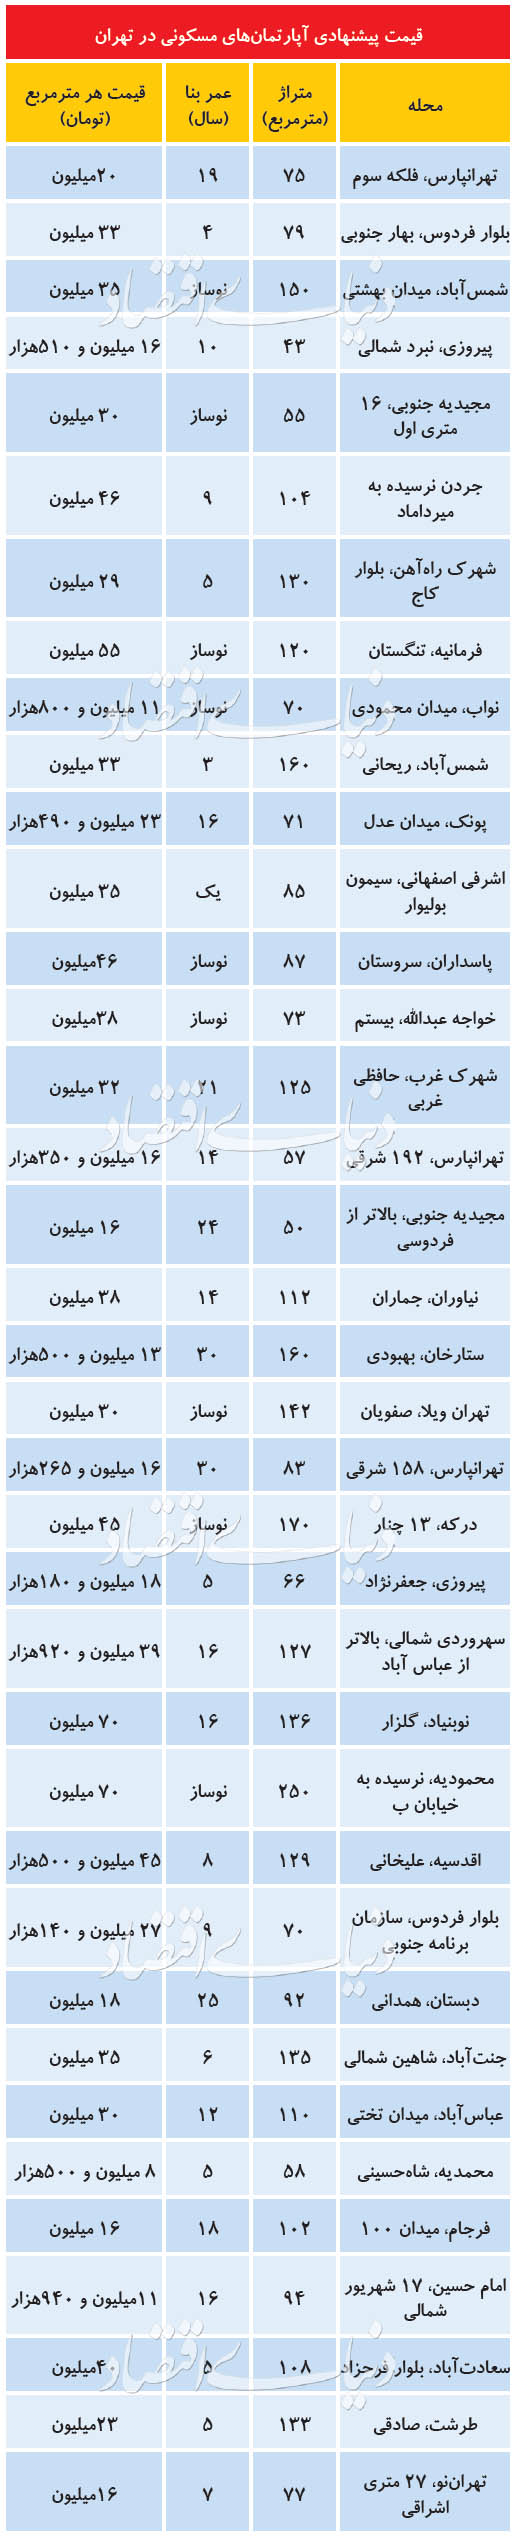 قیمت مسکن در تهران، امروز ۱۴ تیر ۹۹